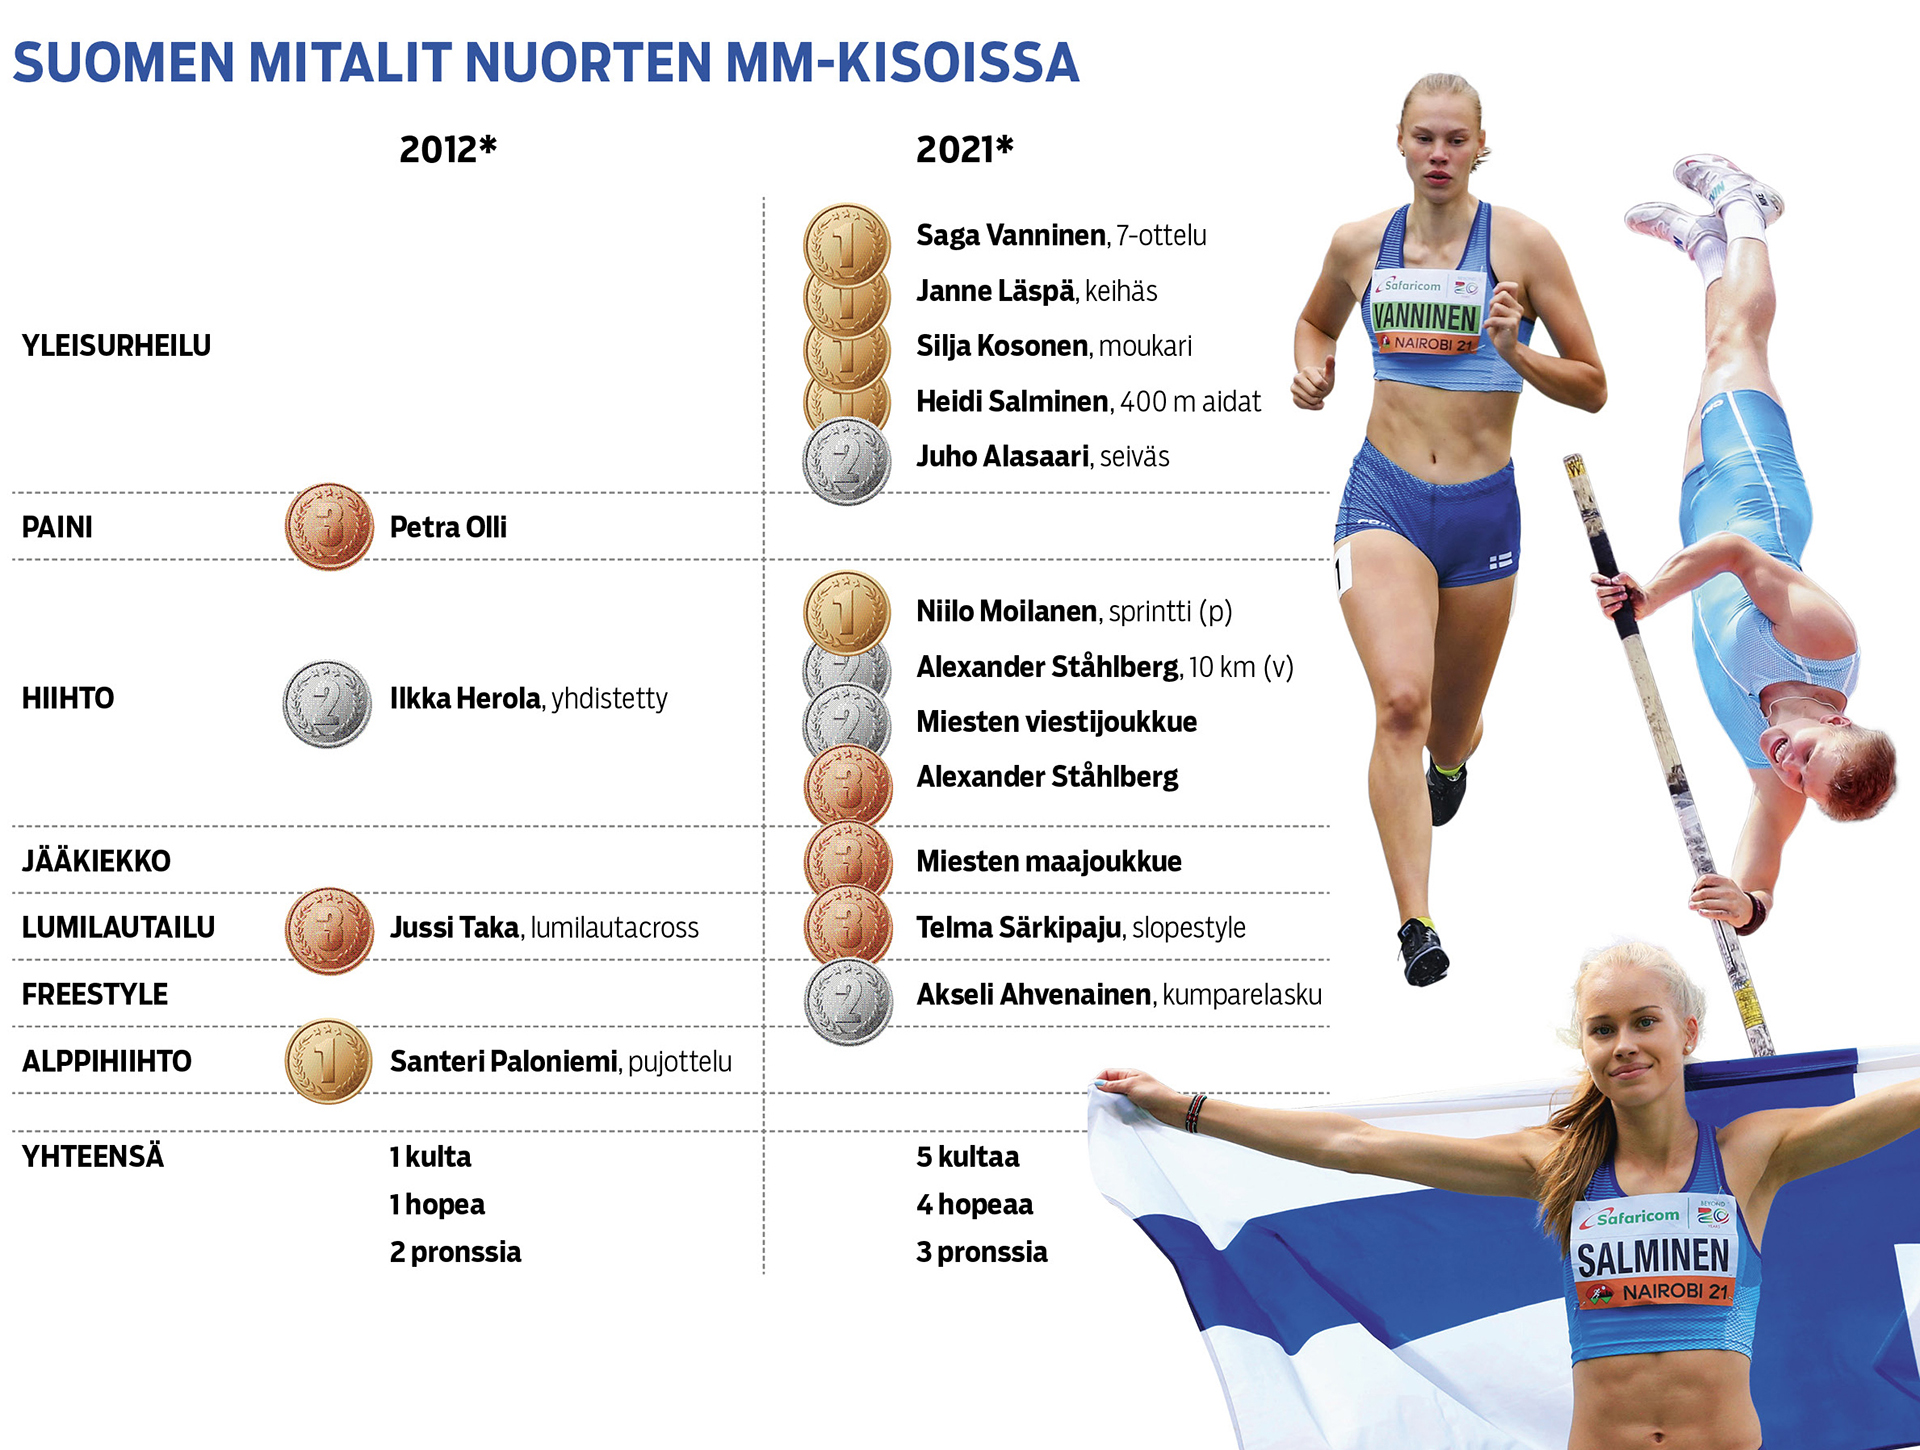 Suomen mitalit nuorten mm-kisoissa